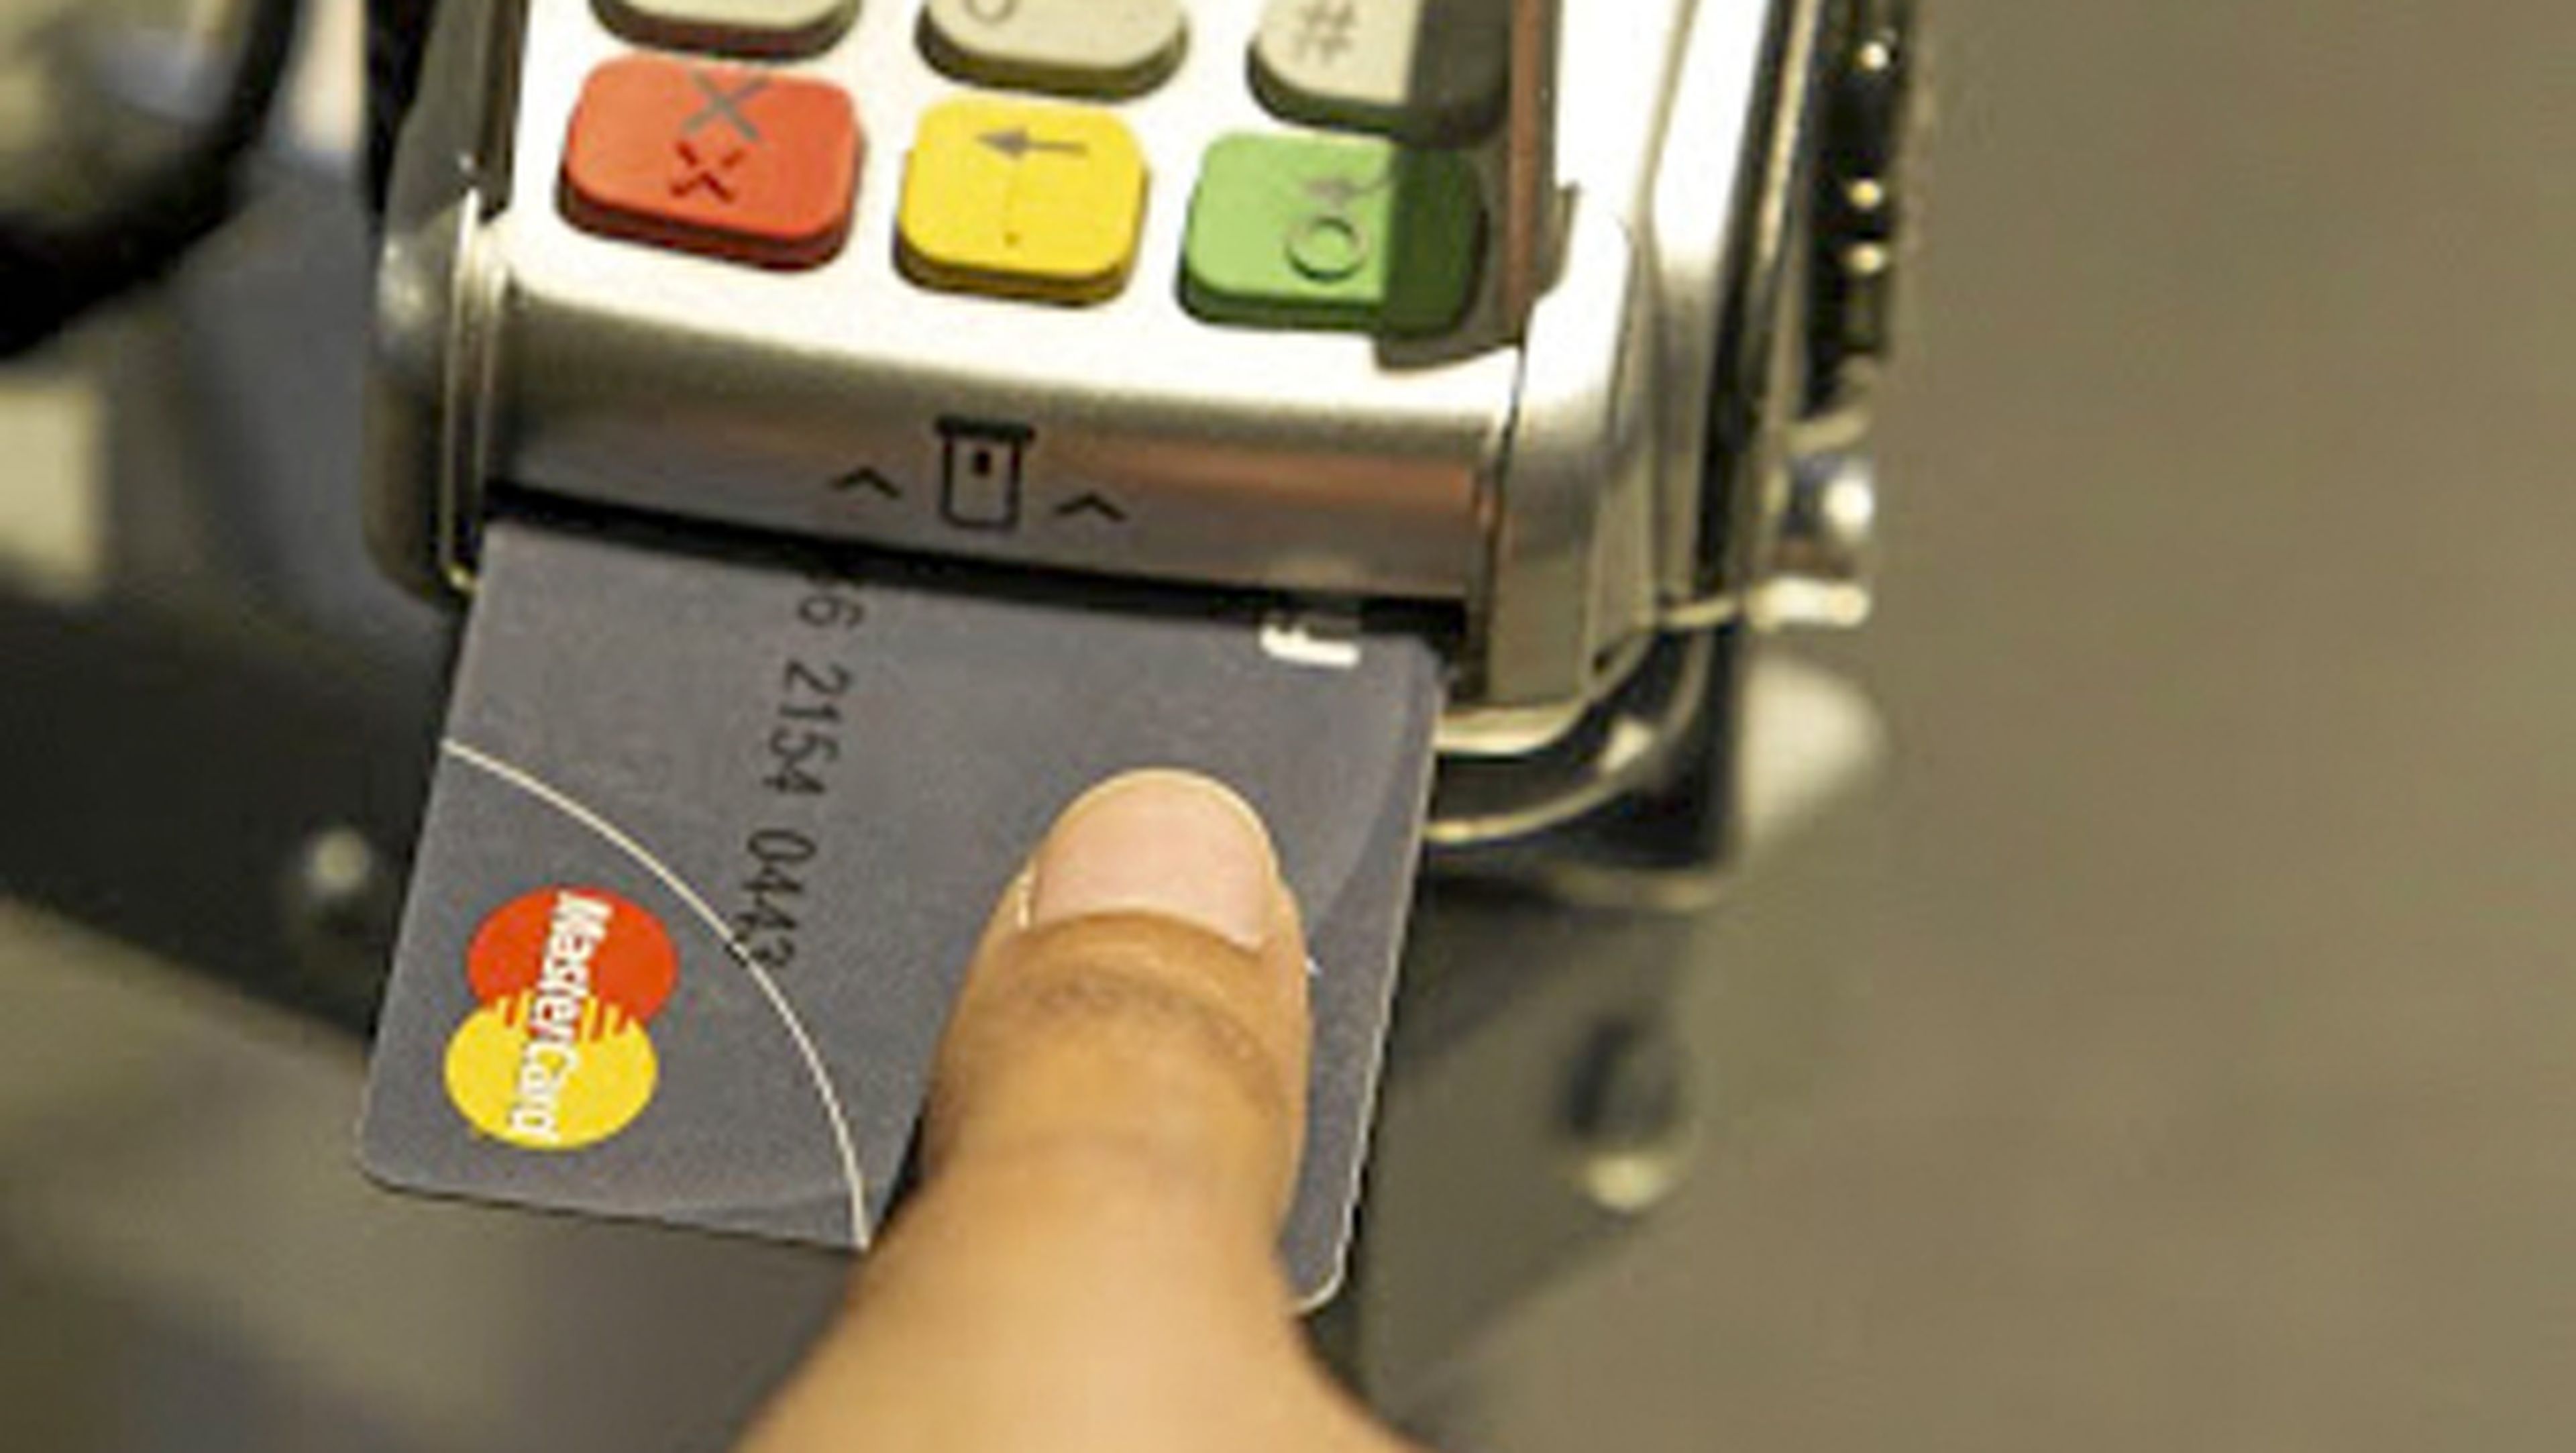 La tarjeta de Mastercard con lector de huellas integrado